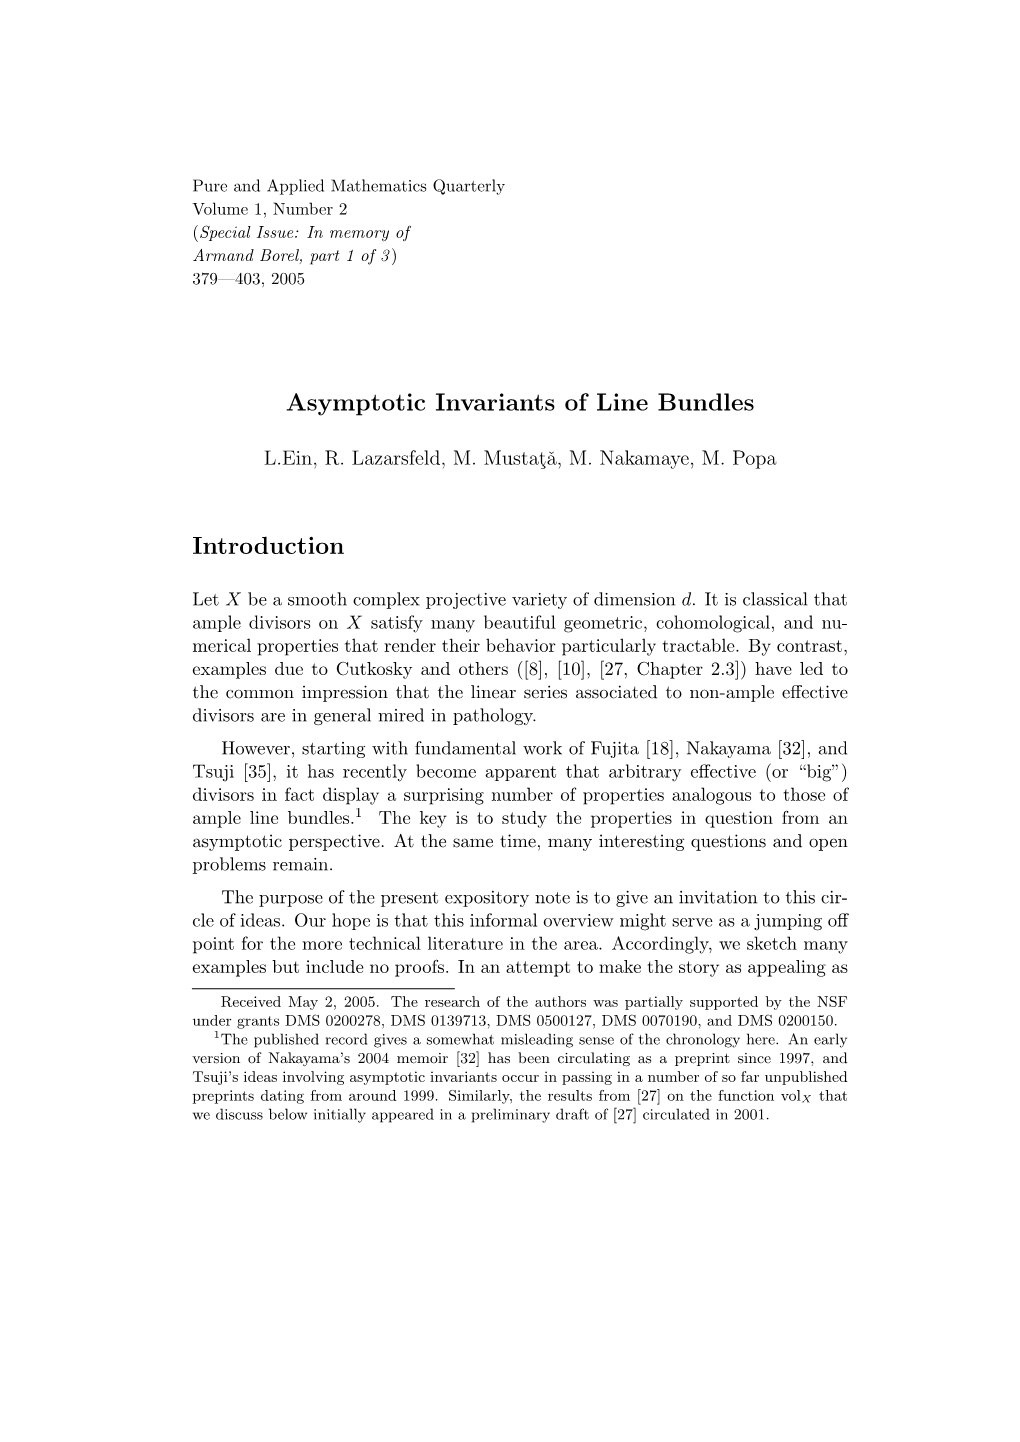 Asymptotic Invariants of Line Bundles